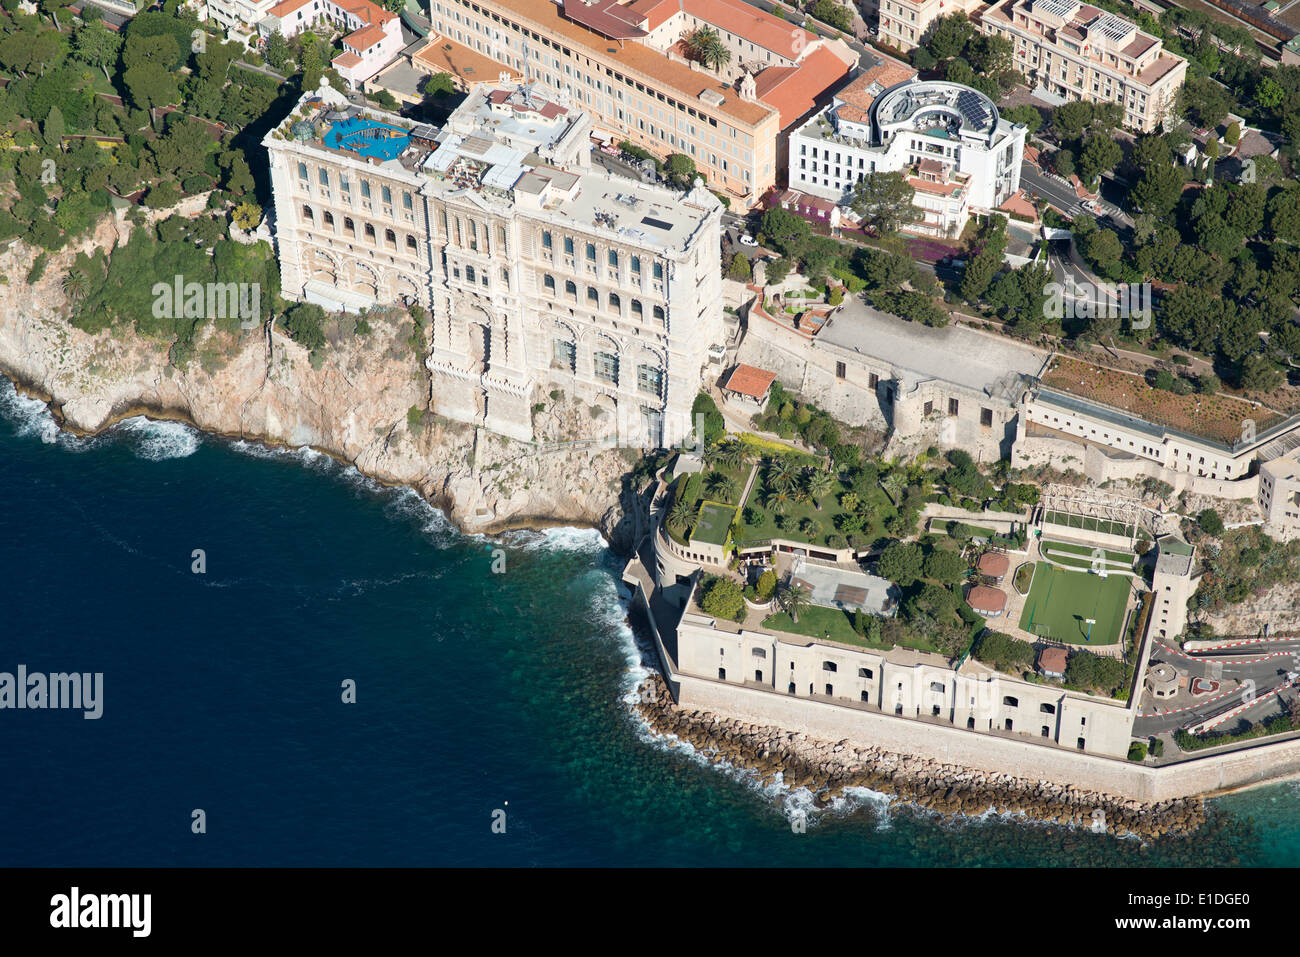 LUFTAUFNAHME. Historisches Ozeanographisches Museum auf einer Klippe mit Blick auf das Mittelmeer. Monaco-Ville (auch bekannt als The Rock), Fürstentum Monaco. Stockfoto